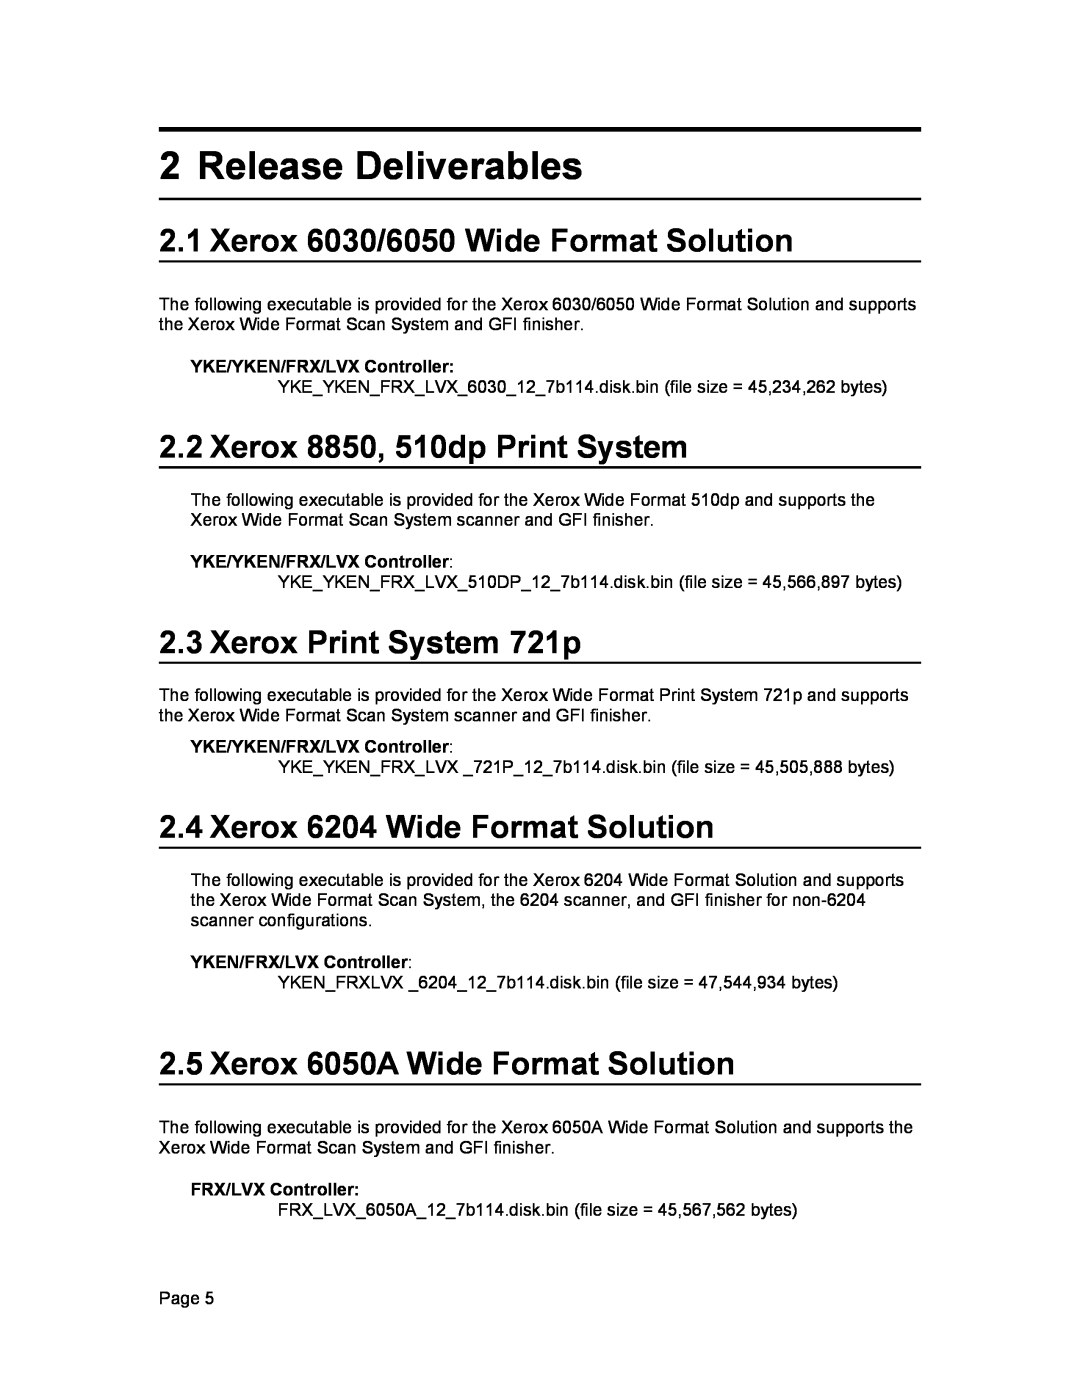 Xerox 12.7 B 114 manual Release Deliverables, YKE/YKEN/FRX/LVX Controller 